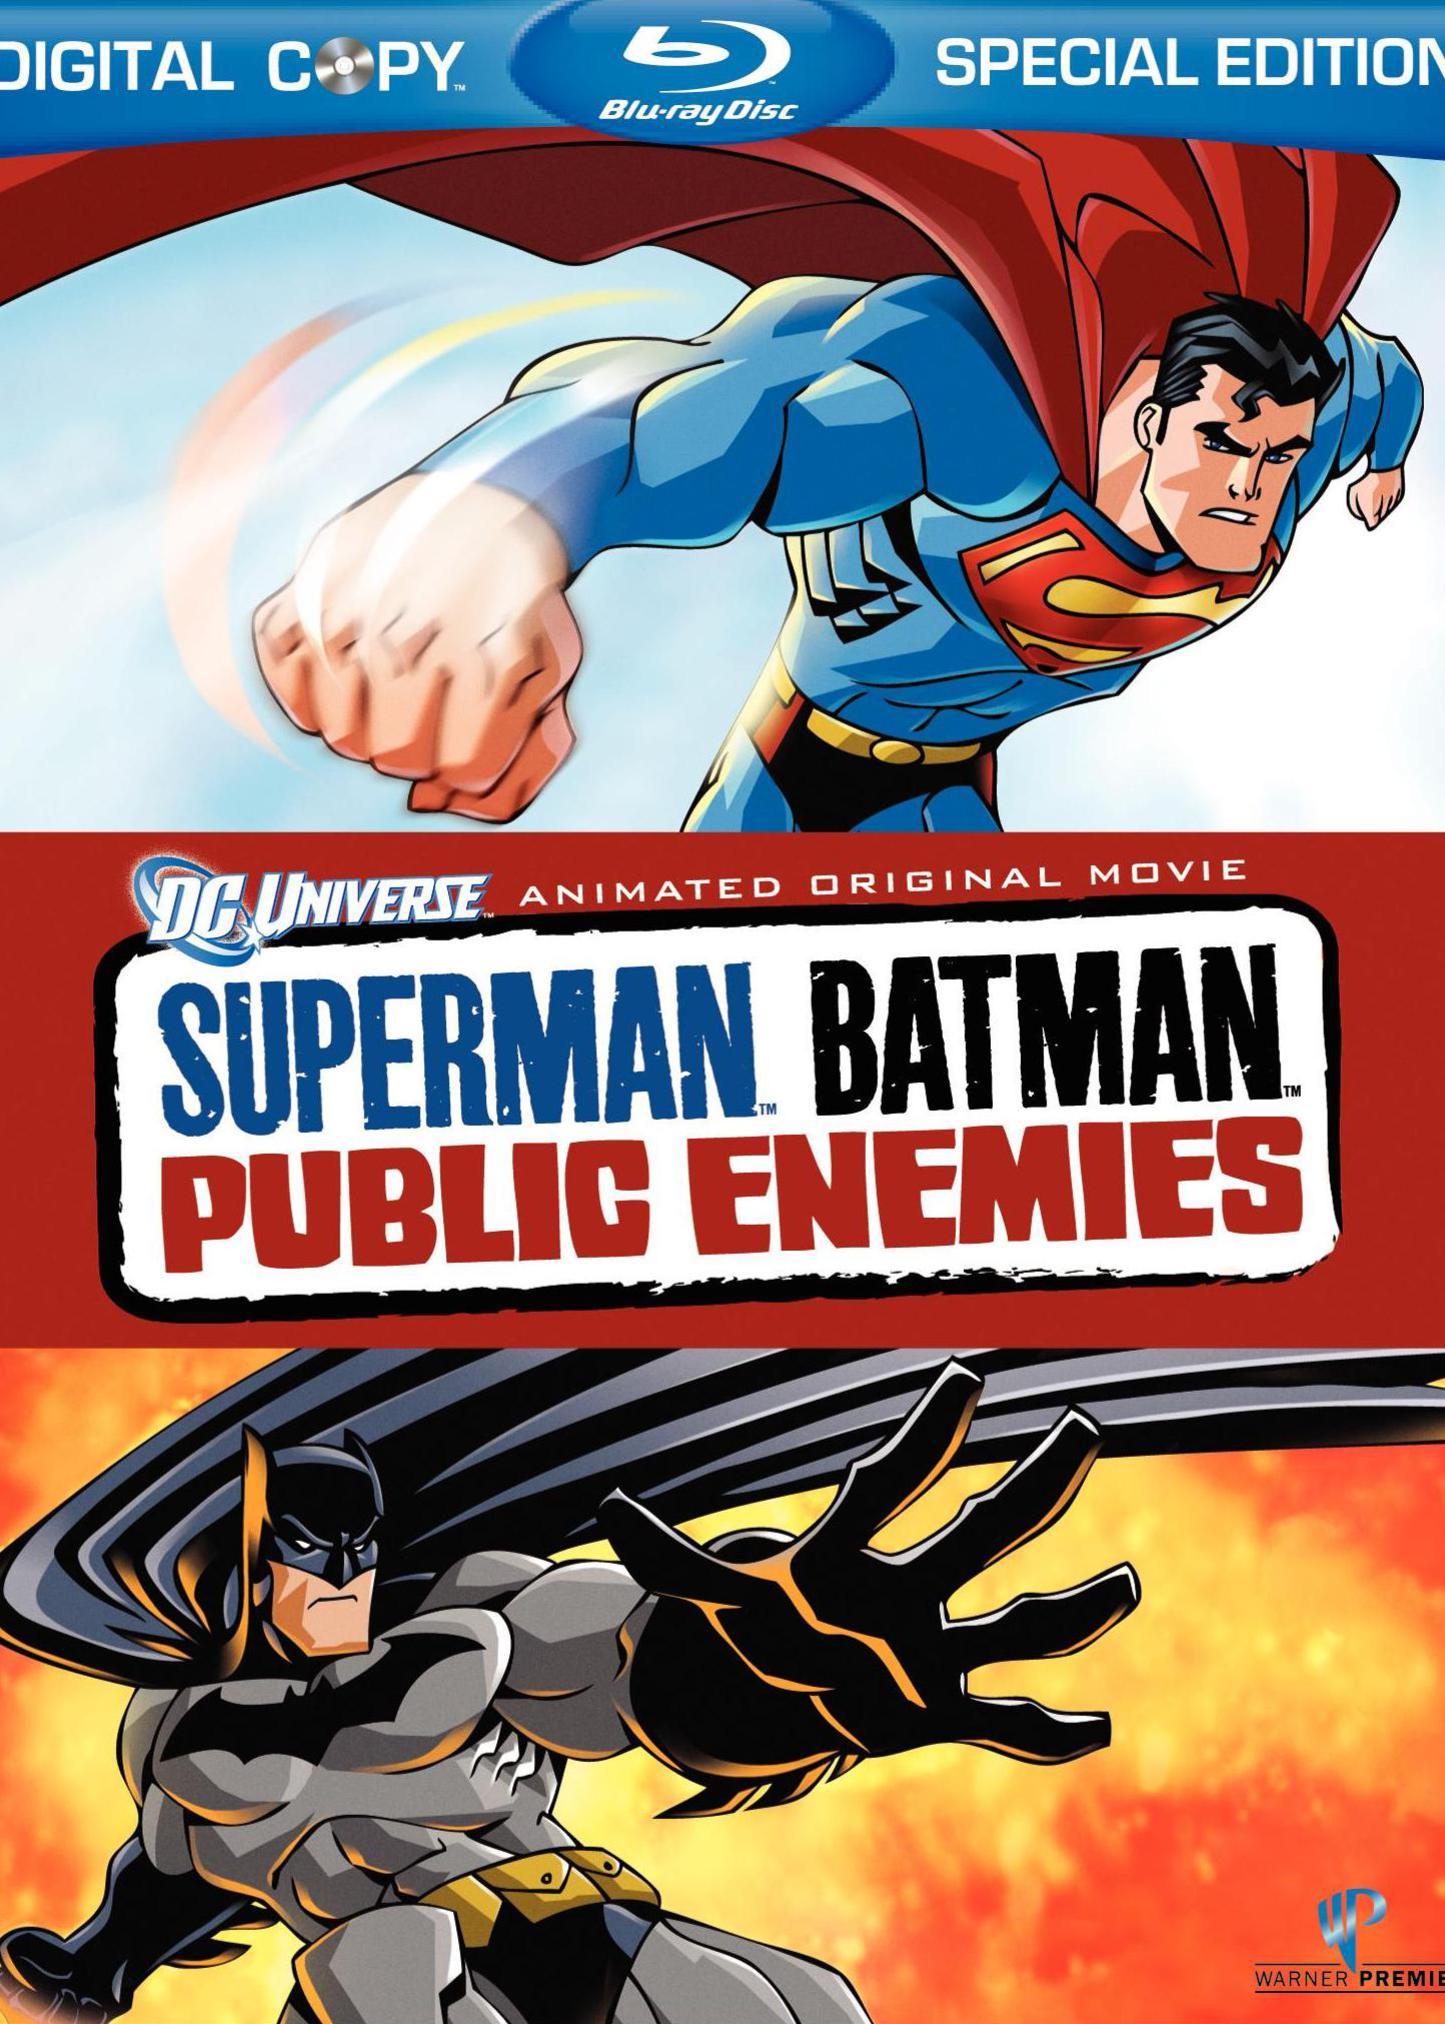 超人与蝙蝠侠:公众之敌